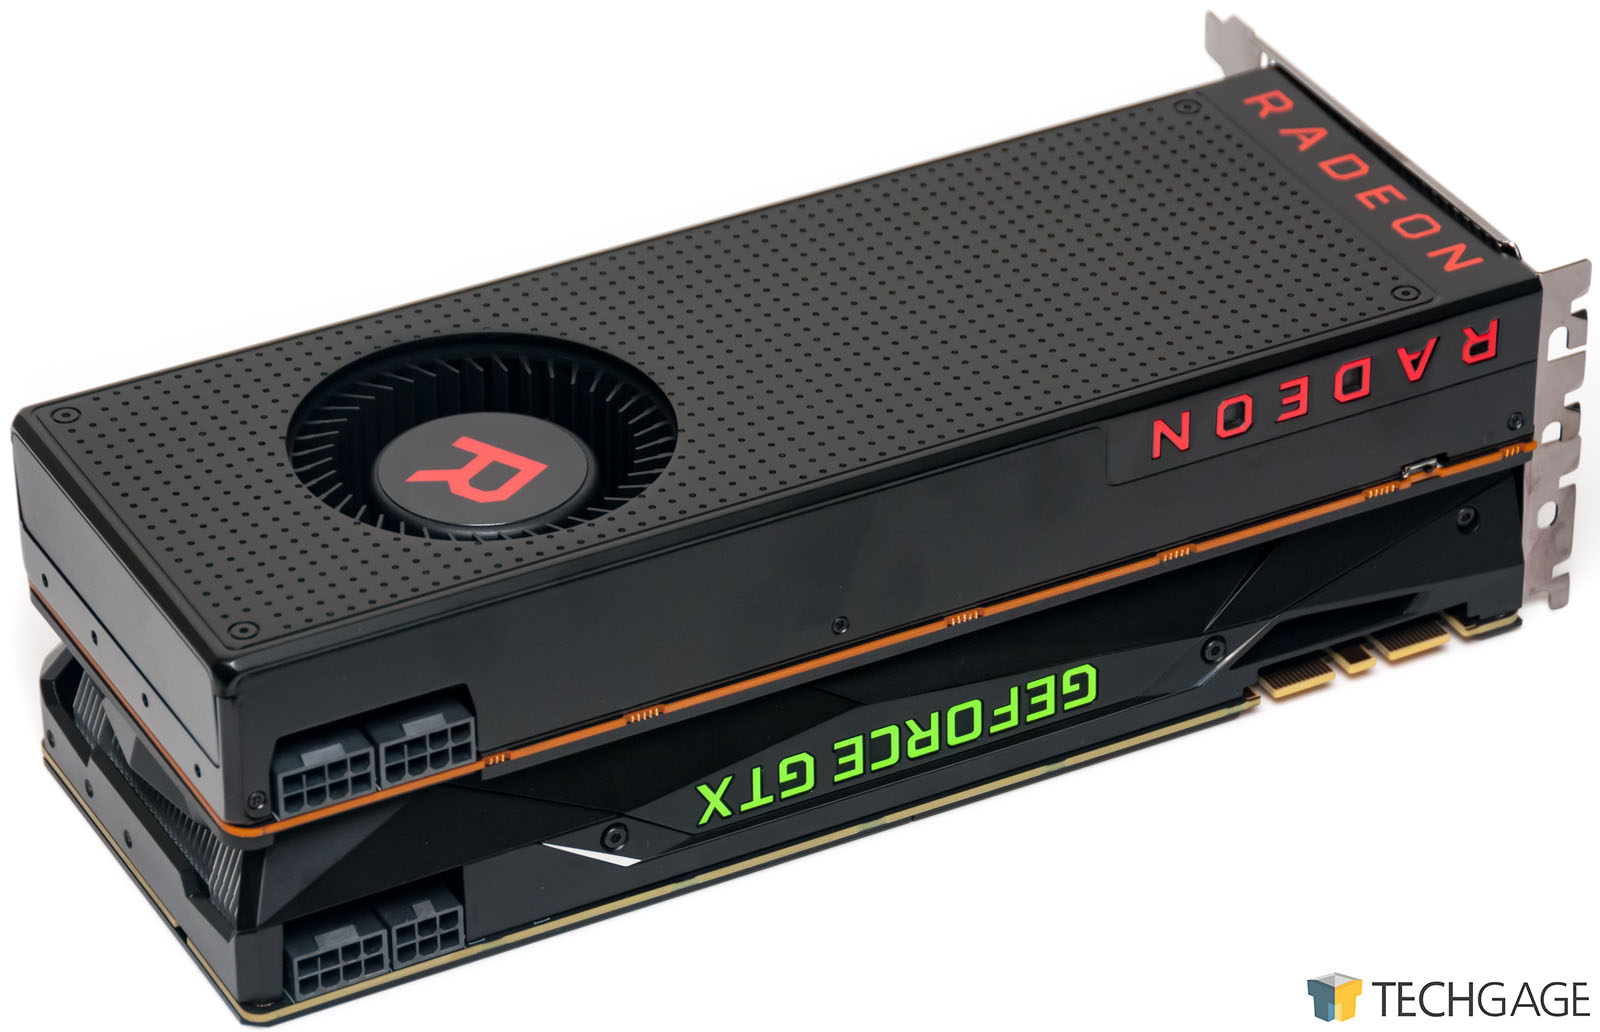 RX Vega 64’ün kutusunda fazladan GPU yer alıyor